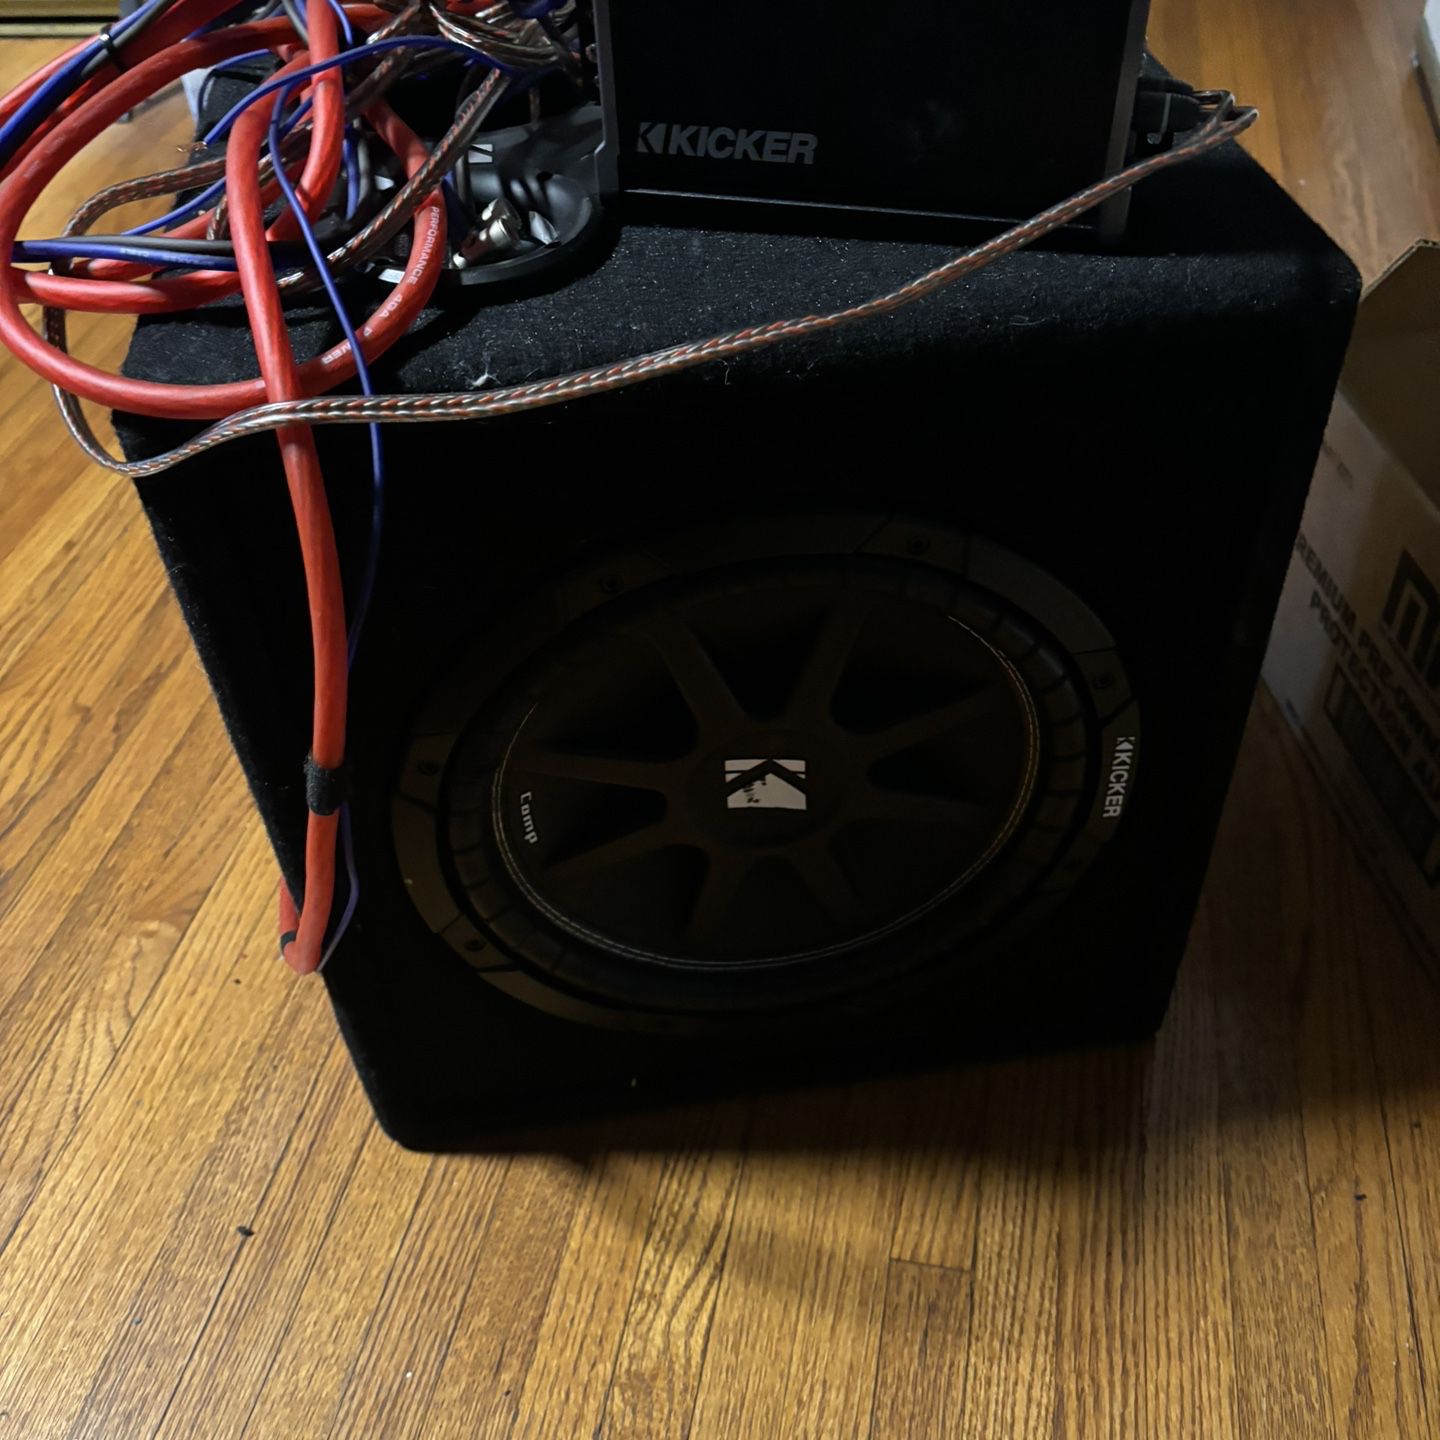 Kicker Speakers/Amplifier